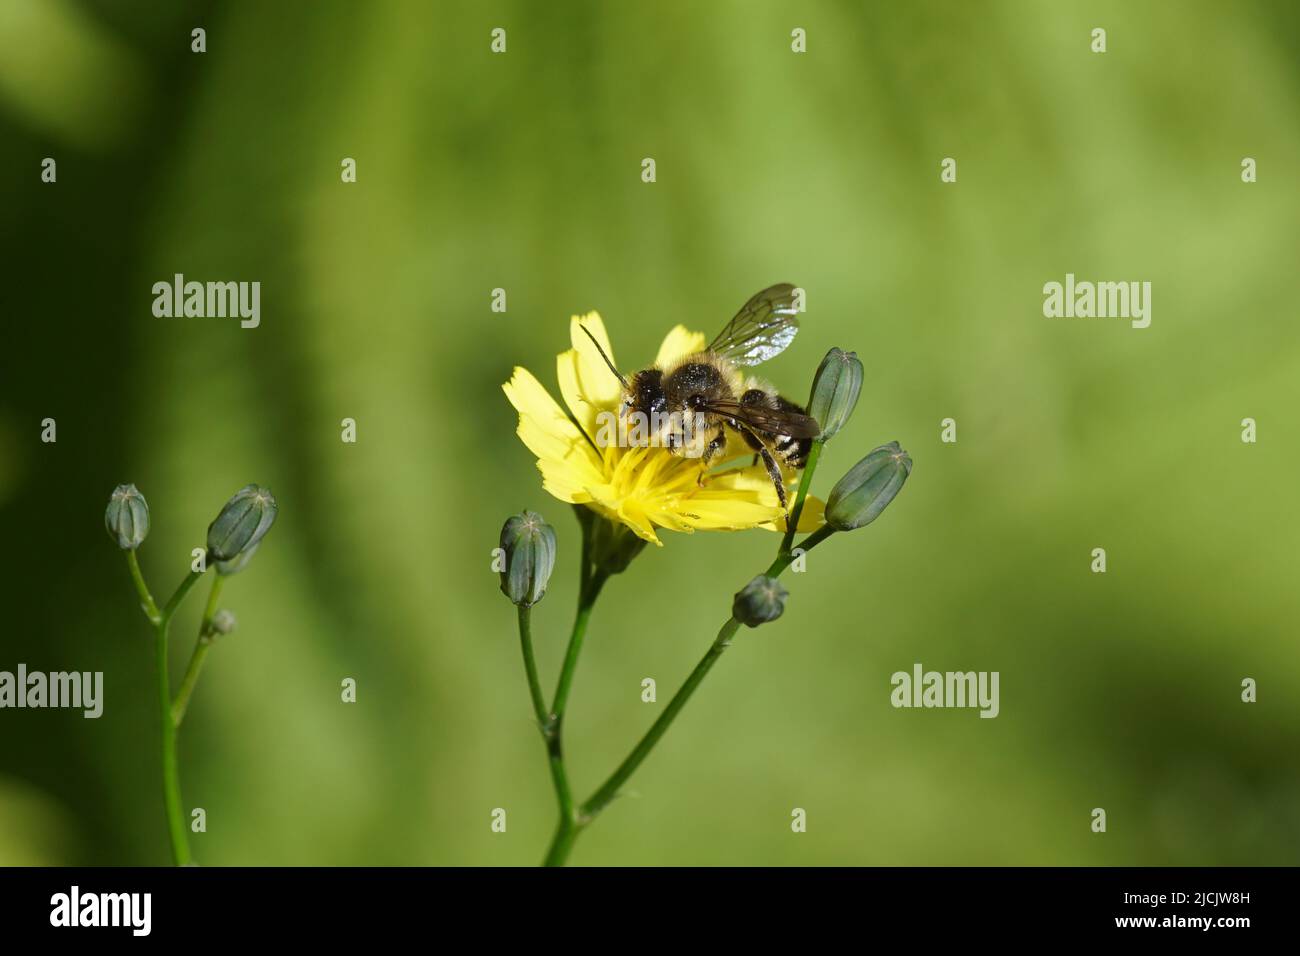 Blattbiene (Megachile), Maurerbienen der Familie (Megachilidae) auf der gelben Blüte des Zwergschnepfens (Lapsan communis). Holländischer Garten. Juni Stockfoto